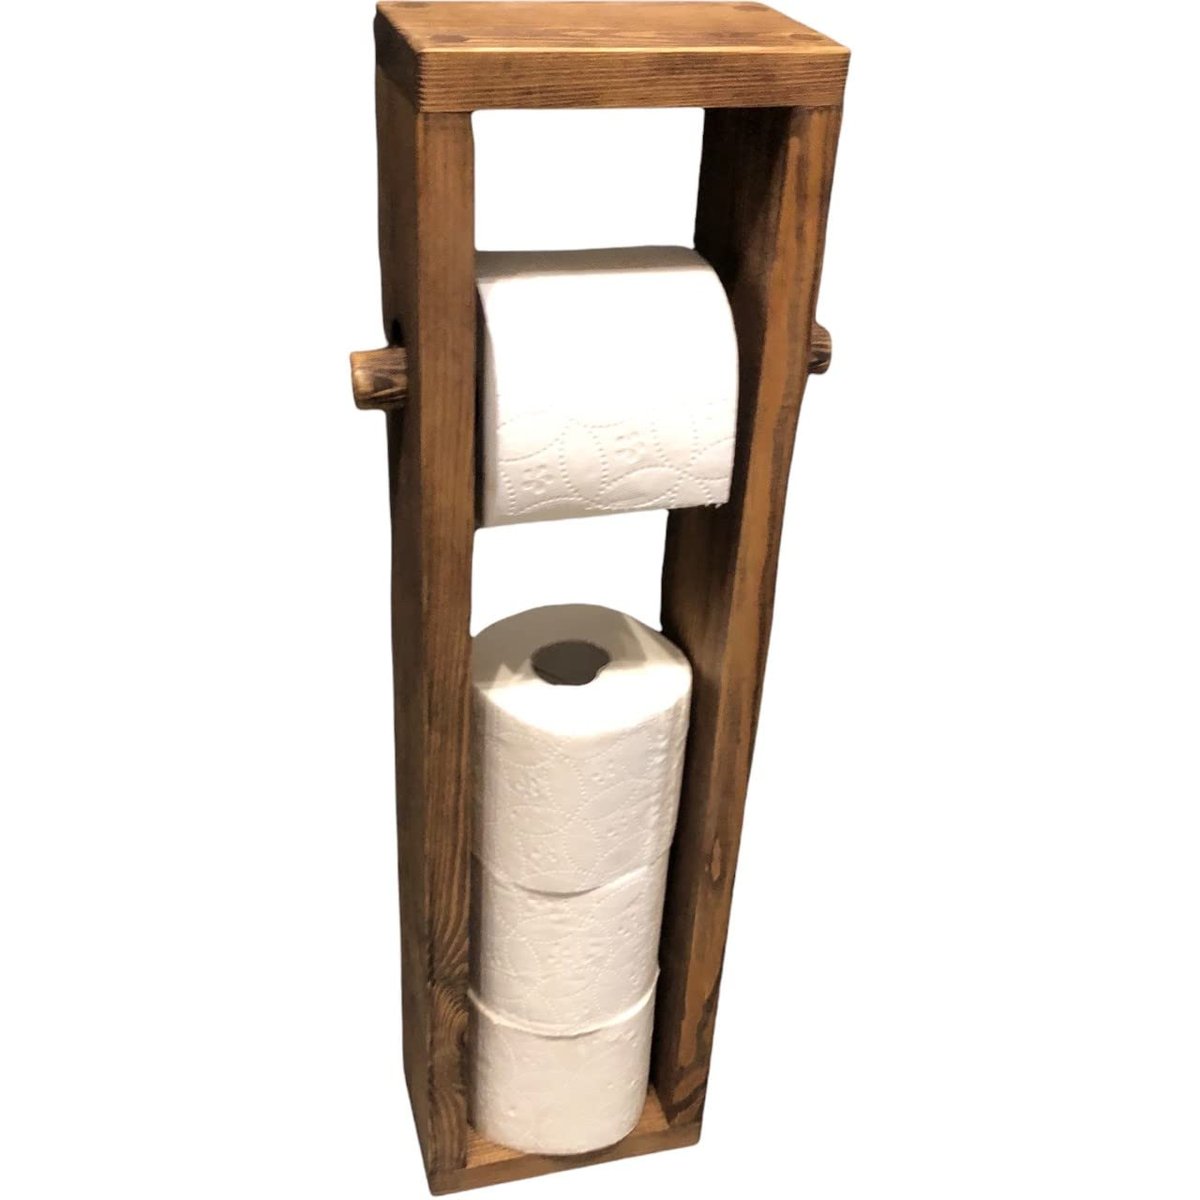 Zdjęcia - Uchwyt na papier toaletowy Drewniany stojak na papier toaletowy wenge, rustykalny styl ręcznie robion